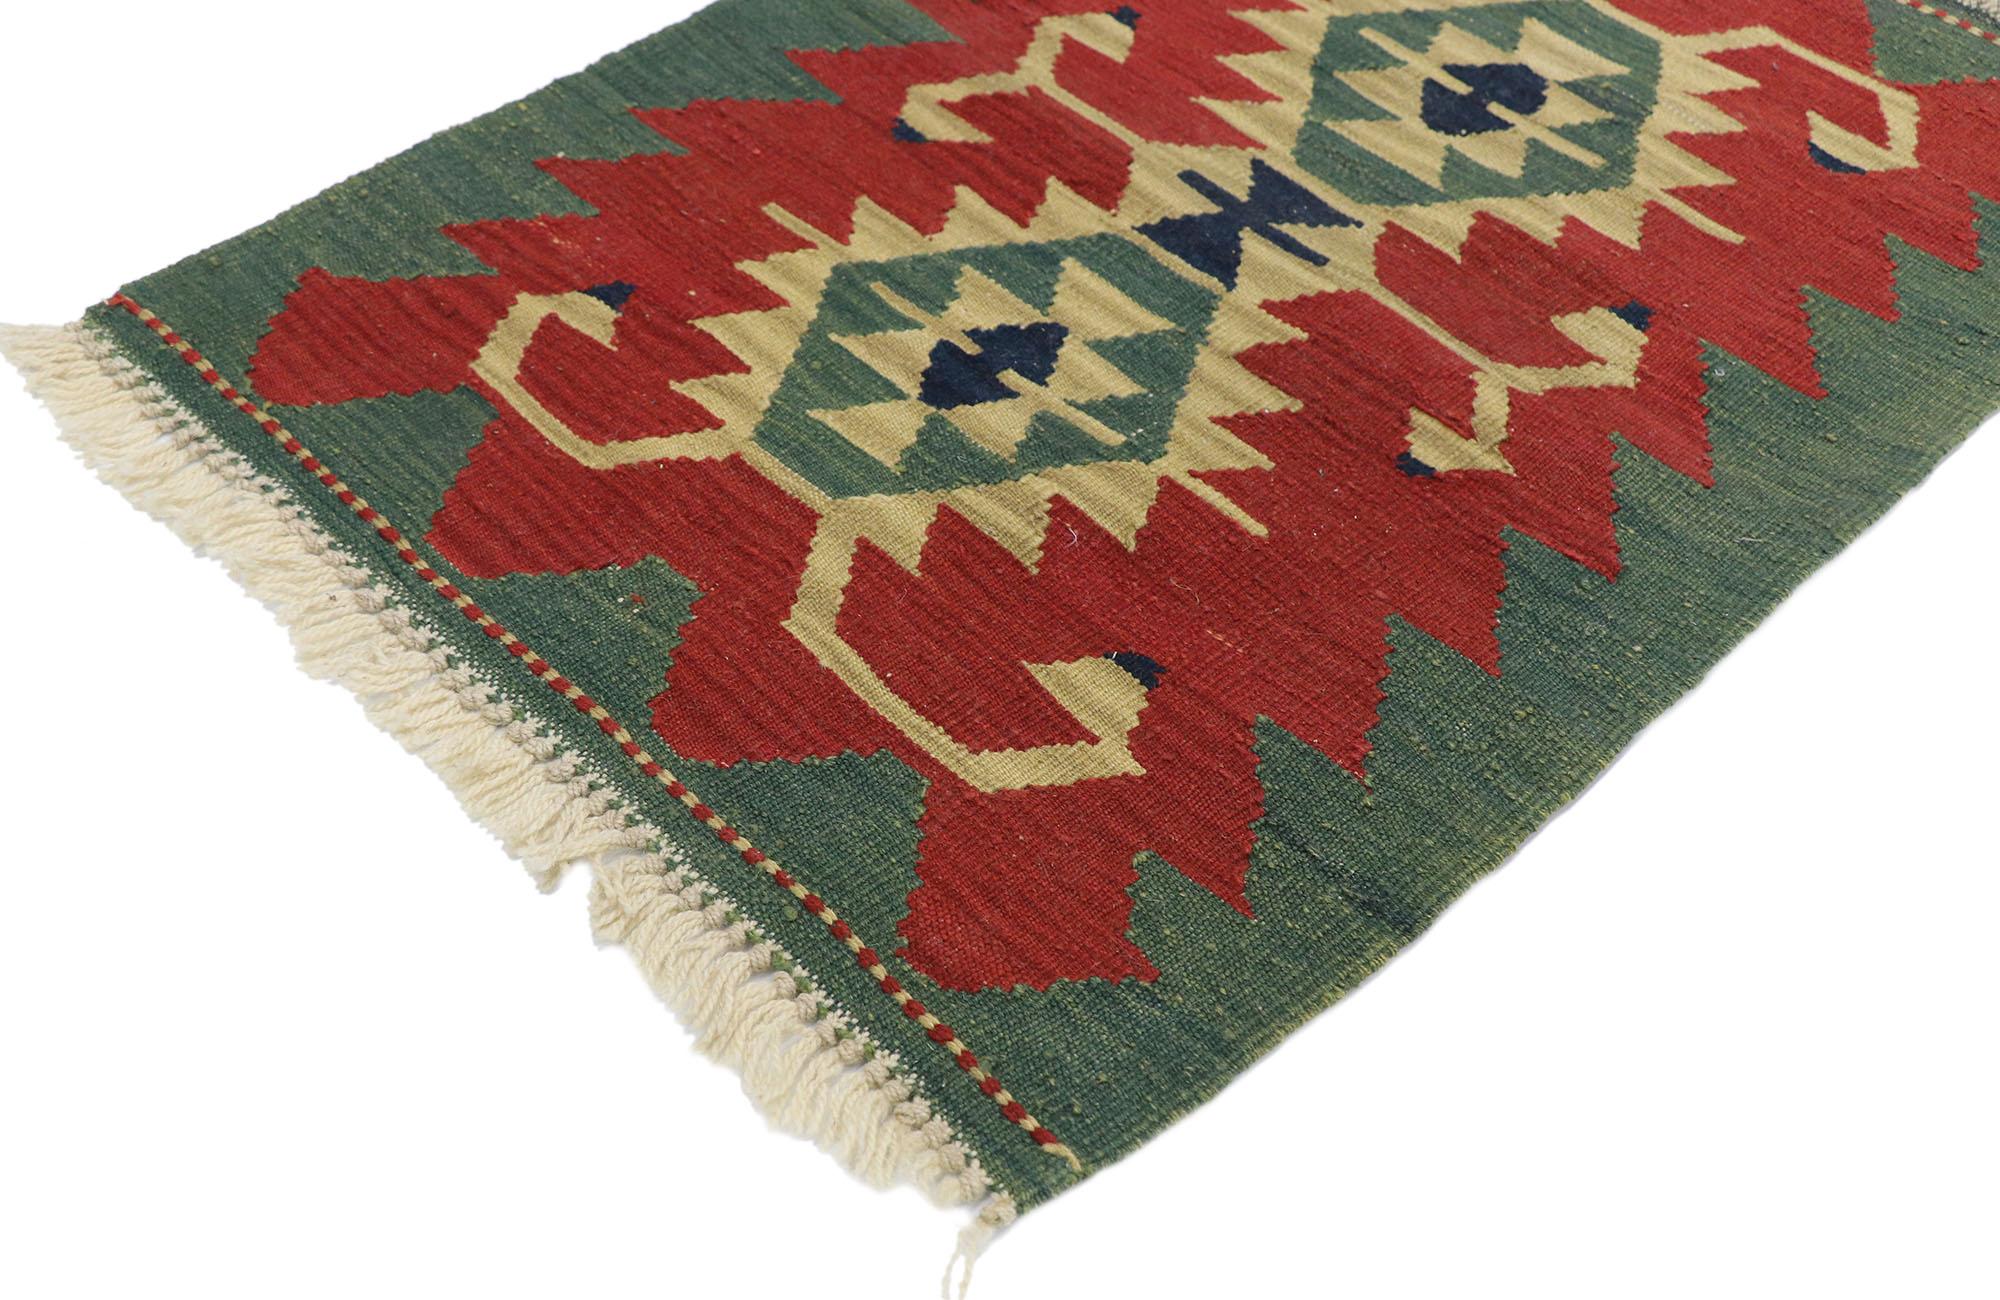 77860, Tapis persan vintage Rug & Kilim de style tribal 02'00 x 02'09. Rempli de détails minuscules et d'un design expressif audacieux combiné à des couleurs vibrantes et à un style tribal, ce tapis kilim persan vintage en laine Shiraz tissé à la